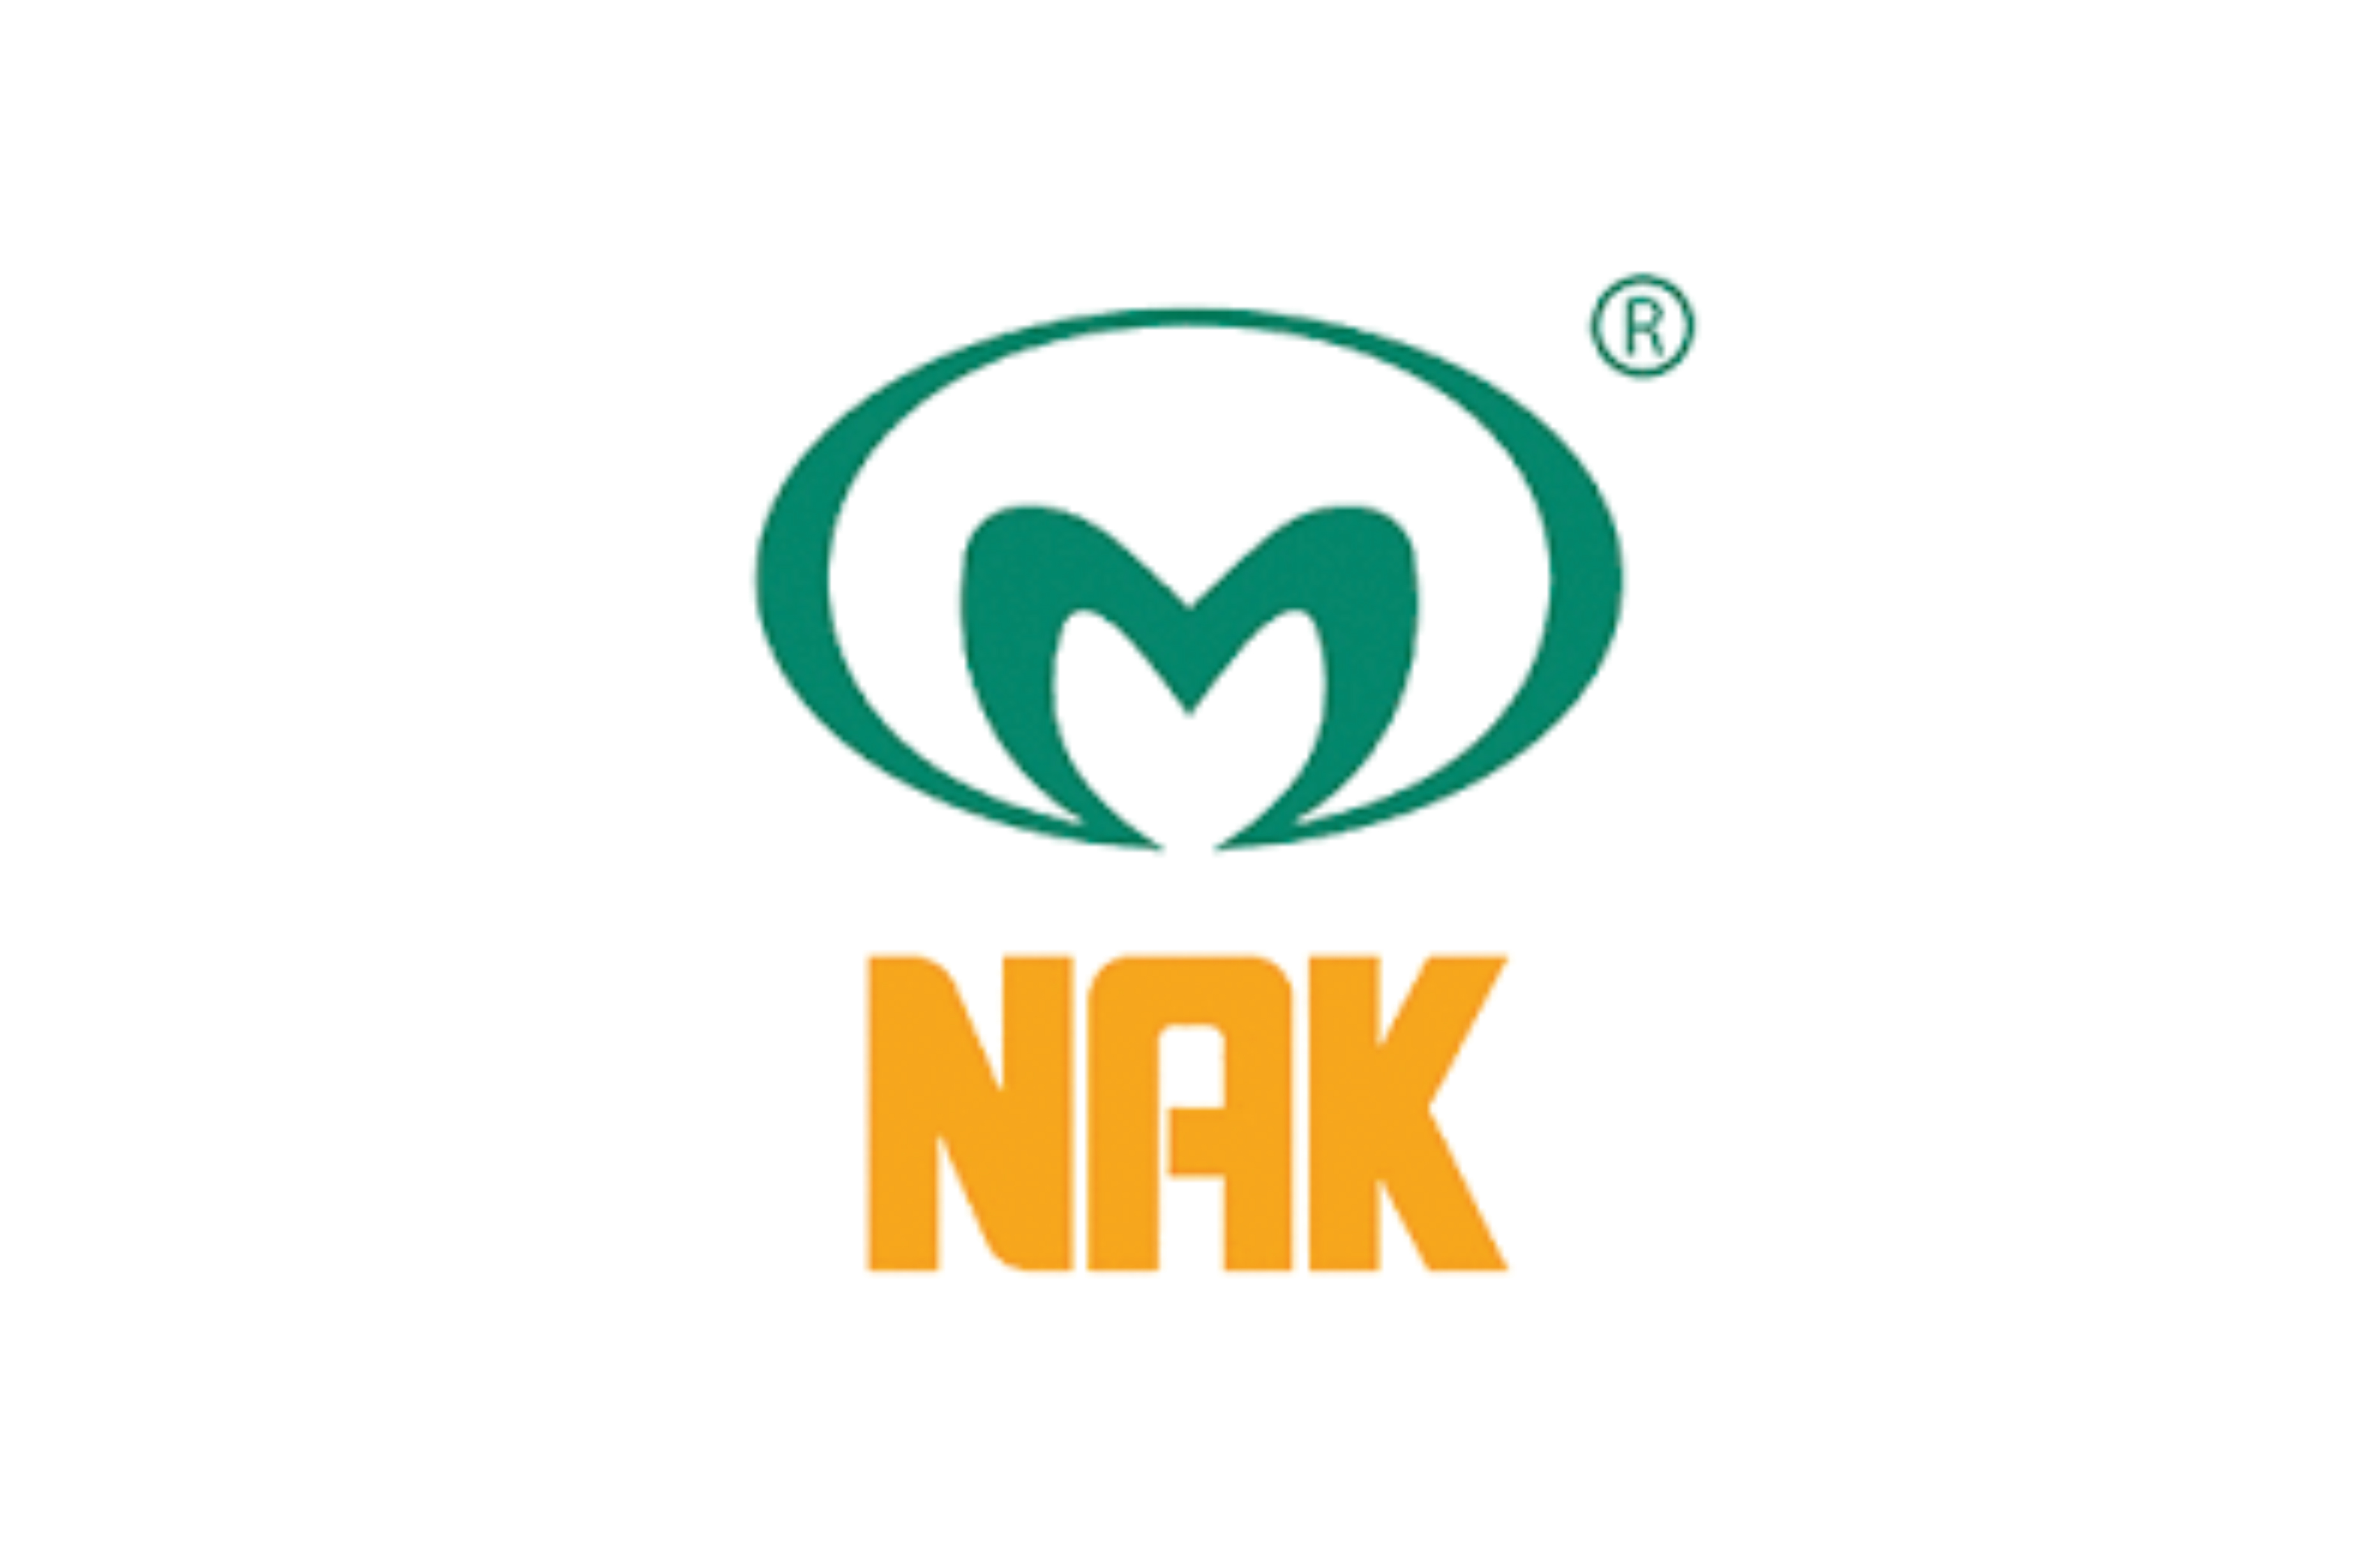 The brands NAK